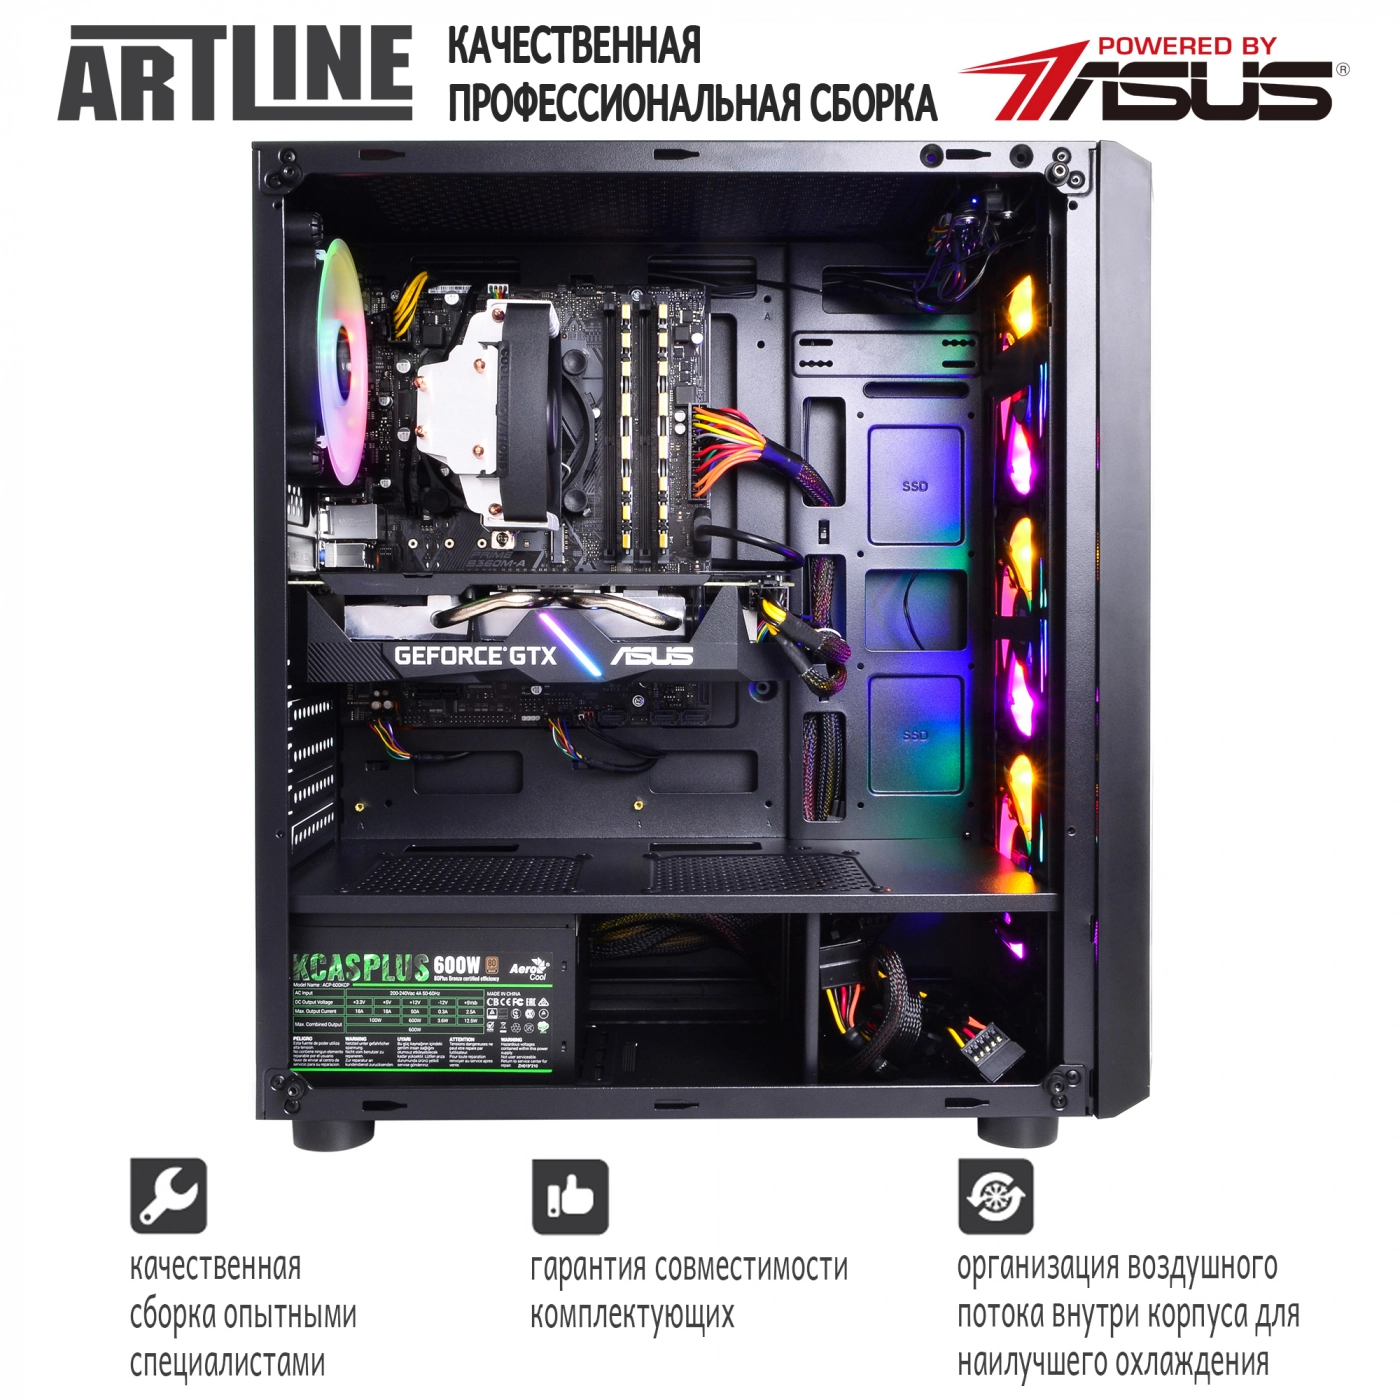 Купить Компьютер ARTLINE Gaming X39v45 - фото 8